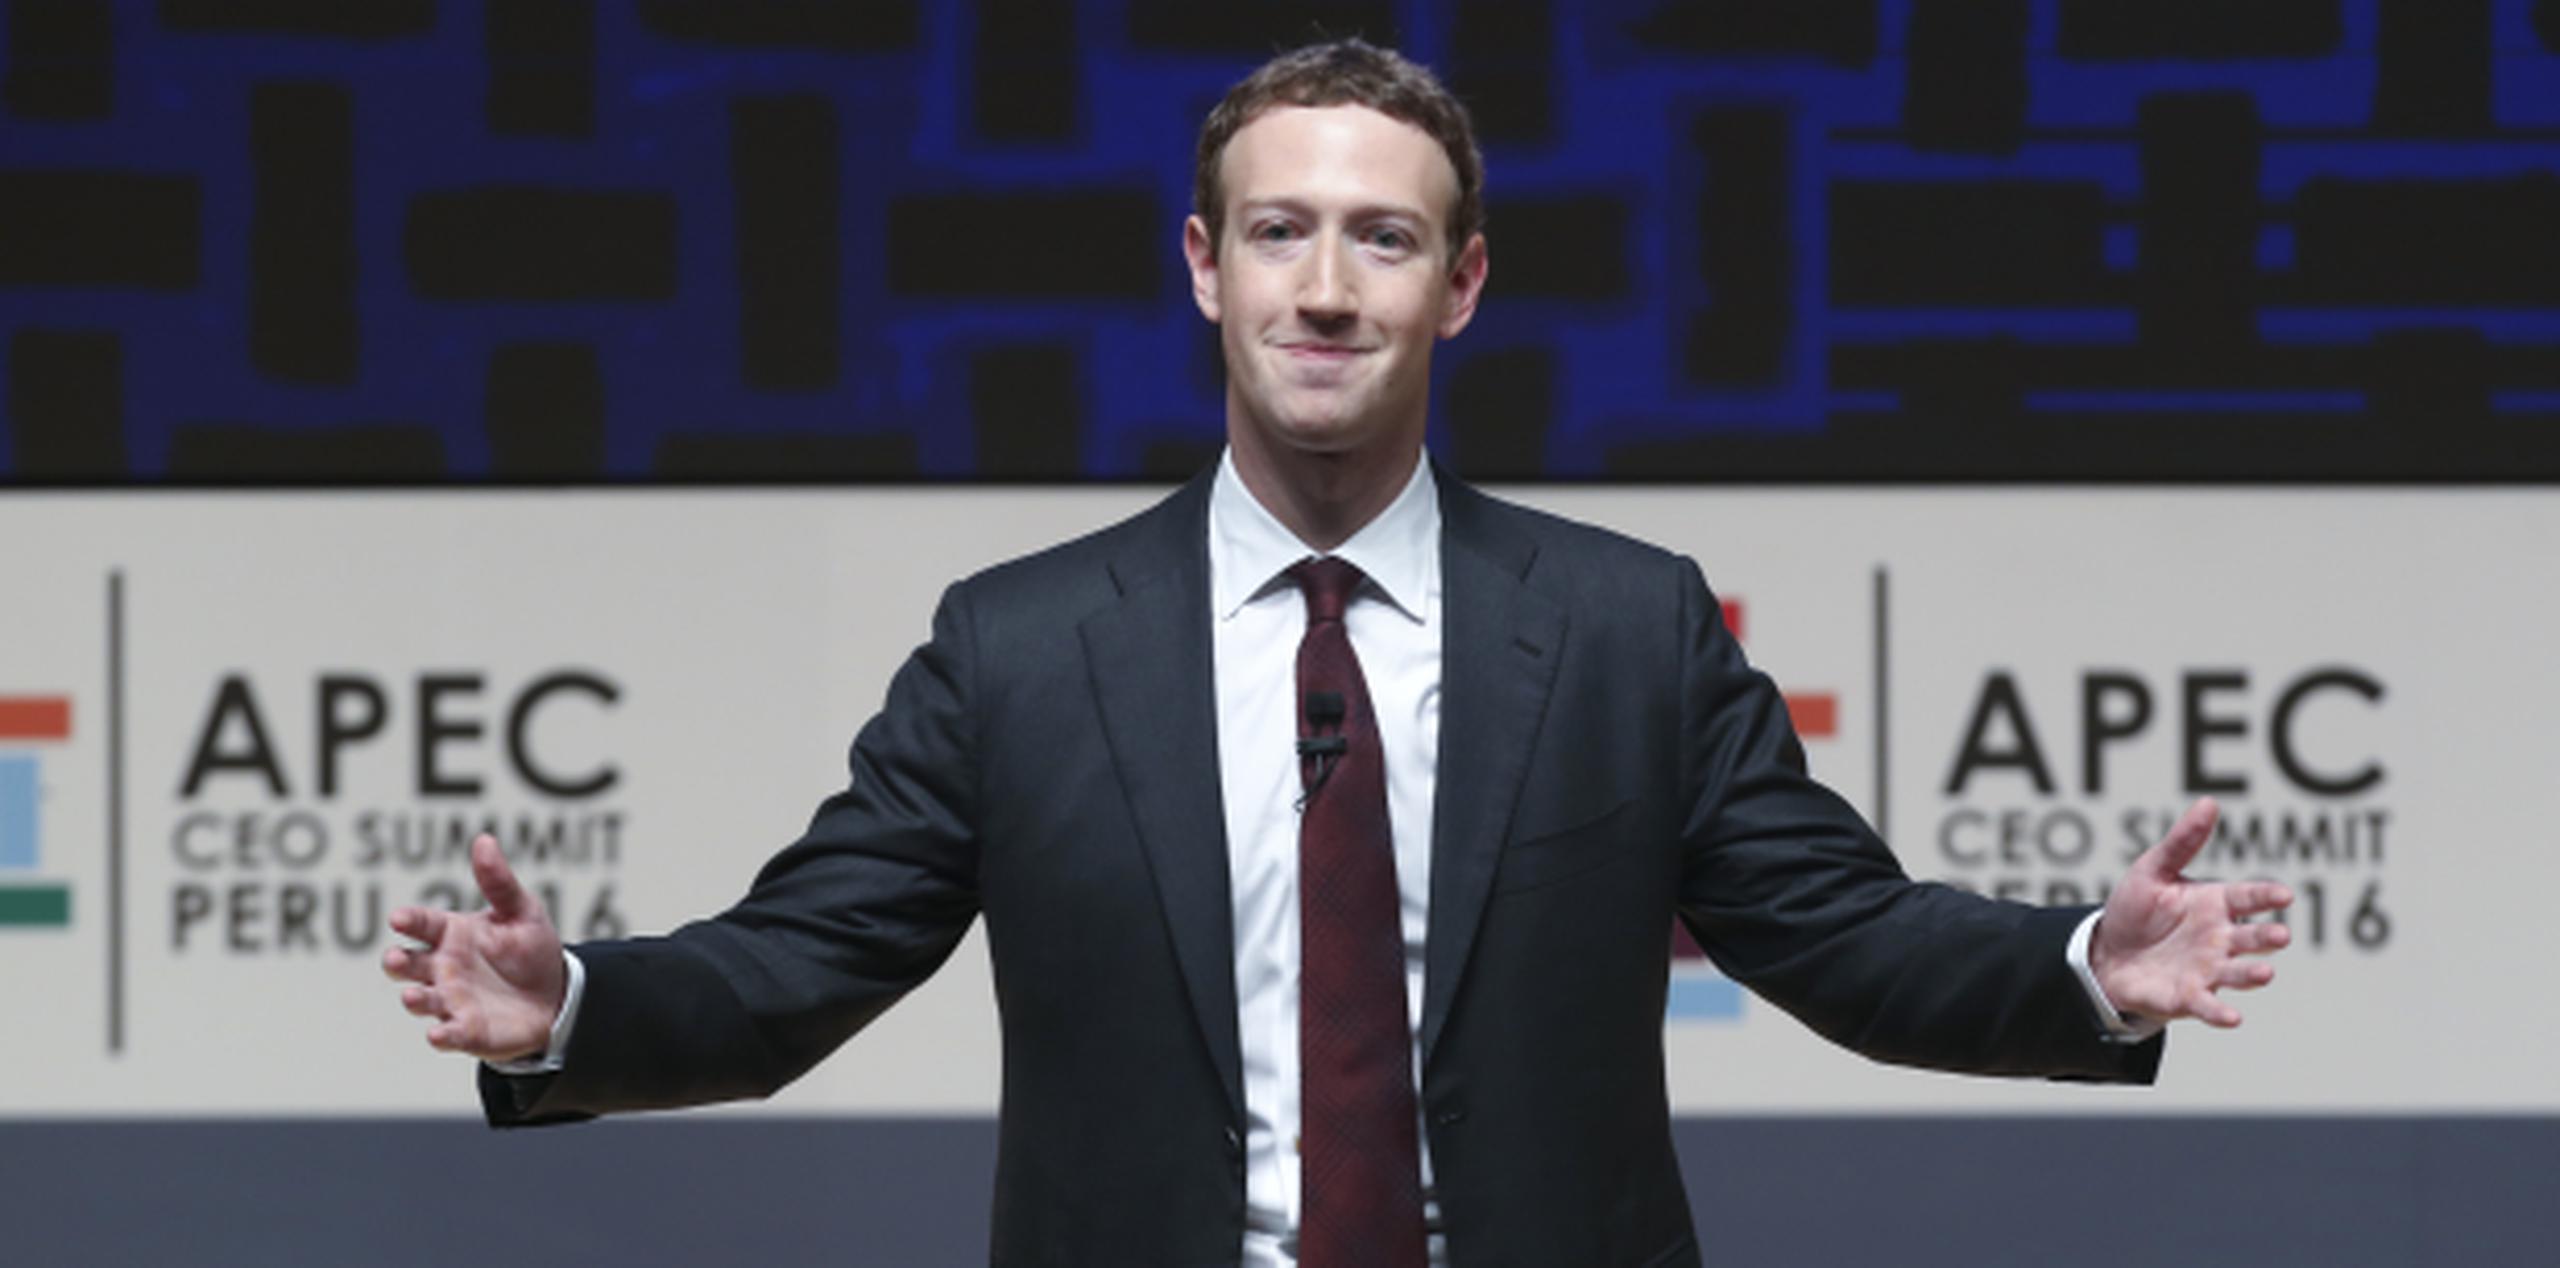 Zuckerberg, de 32 años y cuya fortuna se calcula en 51,000 millones de dólares, pidió a los gobernantes "hacer cosas más grandes para crear prosperidad y acceso a todos". (Prensa Asociada)